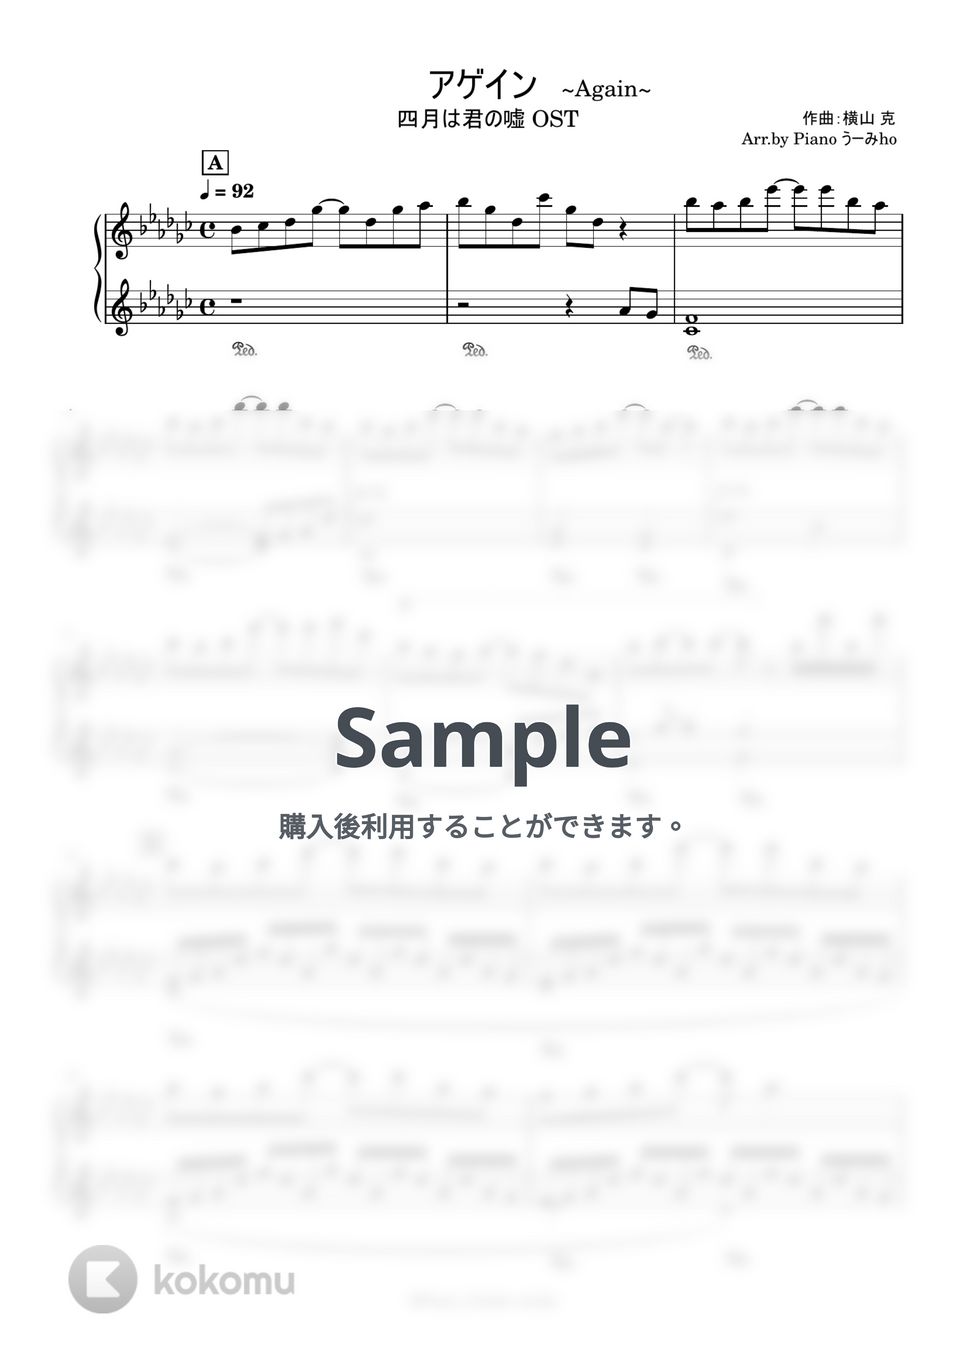 横山 克 - アゲイン「四月は君の嘘」OST by Pianoうーみho